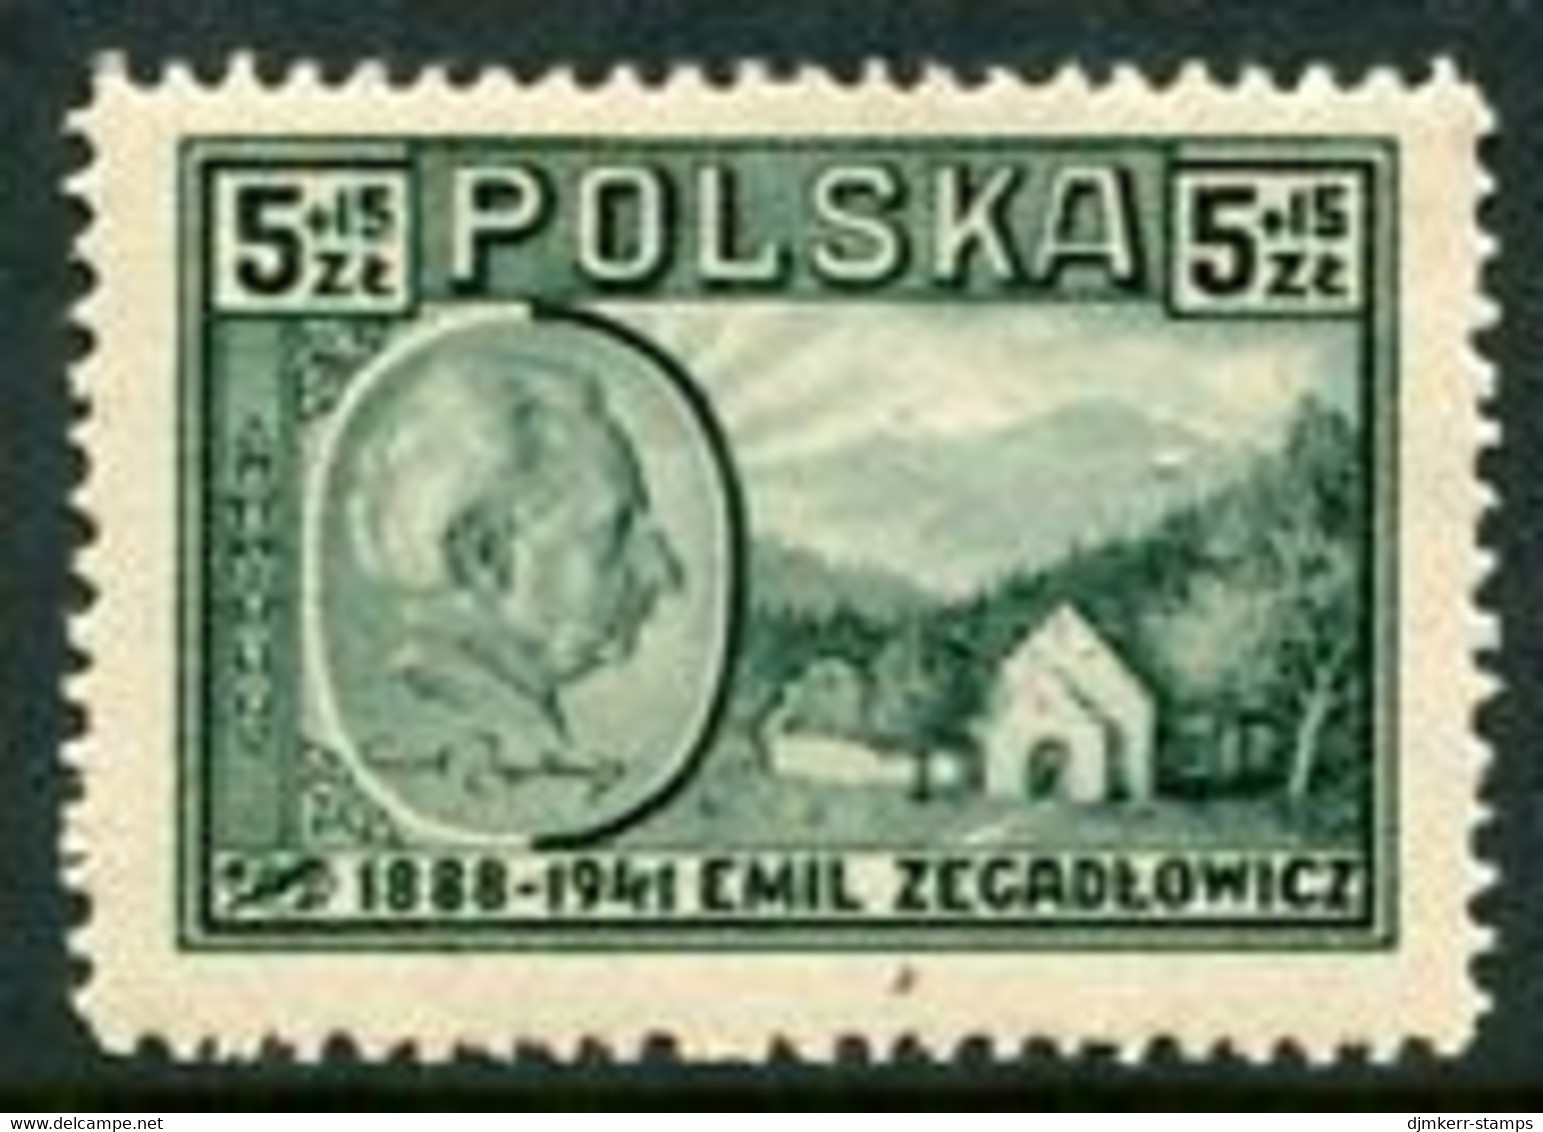 POLAND 1947 Zegadlowicz LHM / *.  Michel 453 - Neufs